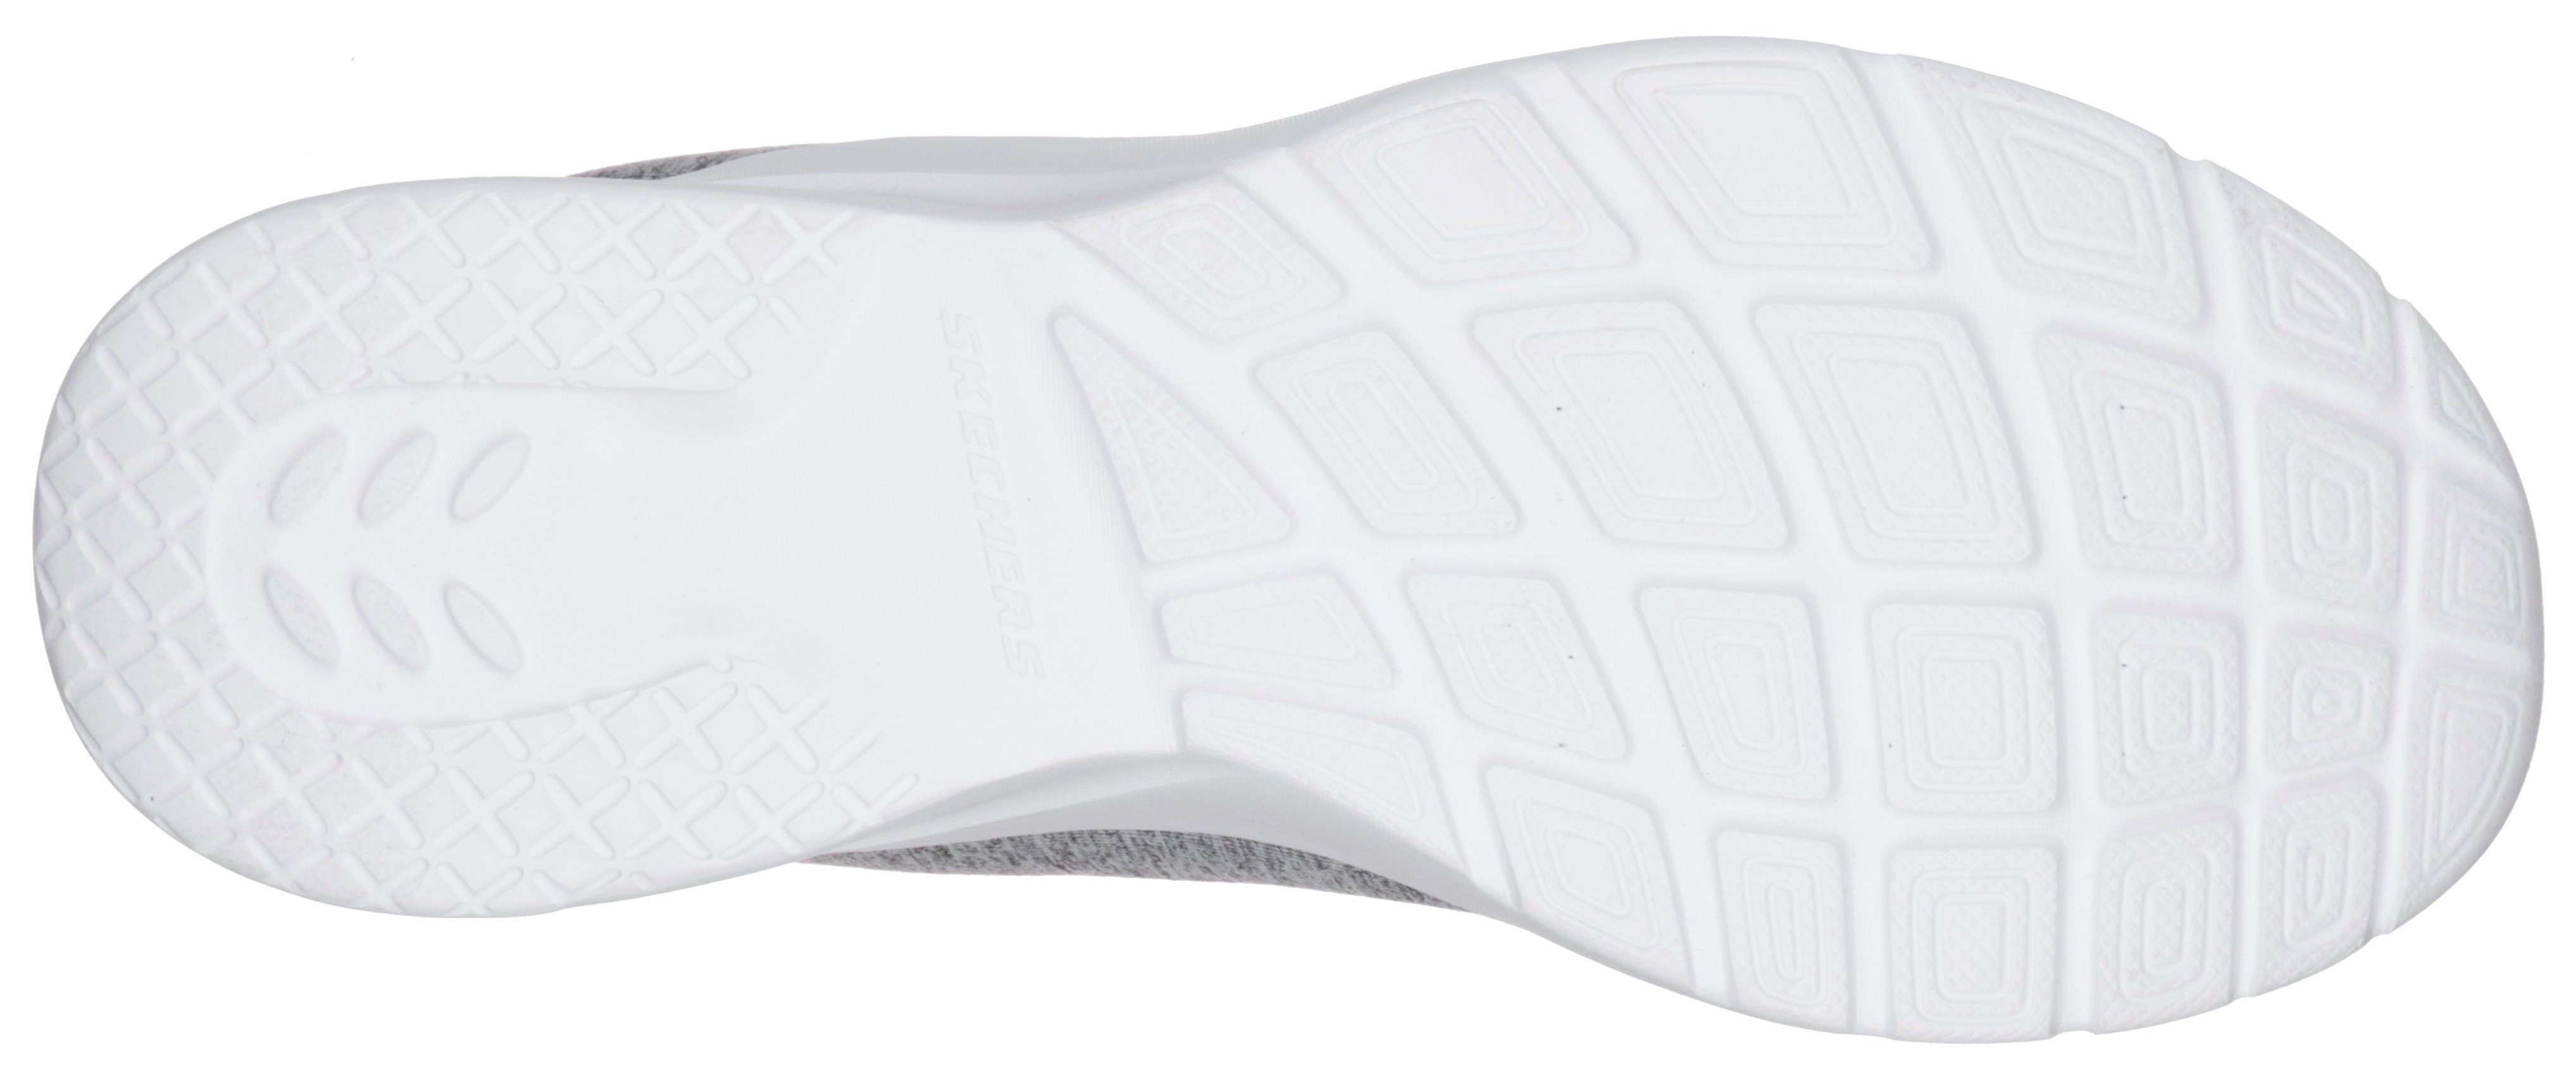 für A Skechers DYNAMIGHT Sneaker geeignet FLASH grau-mint 2.0-IN Maschinenwäsche Slip-On